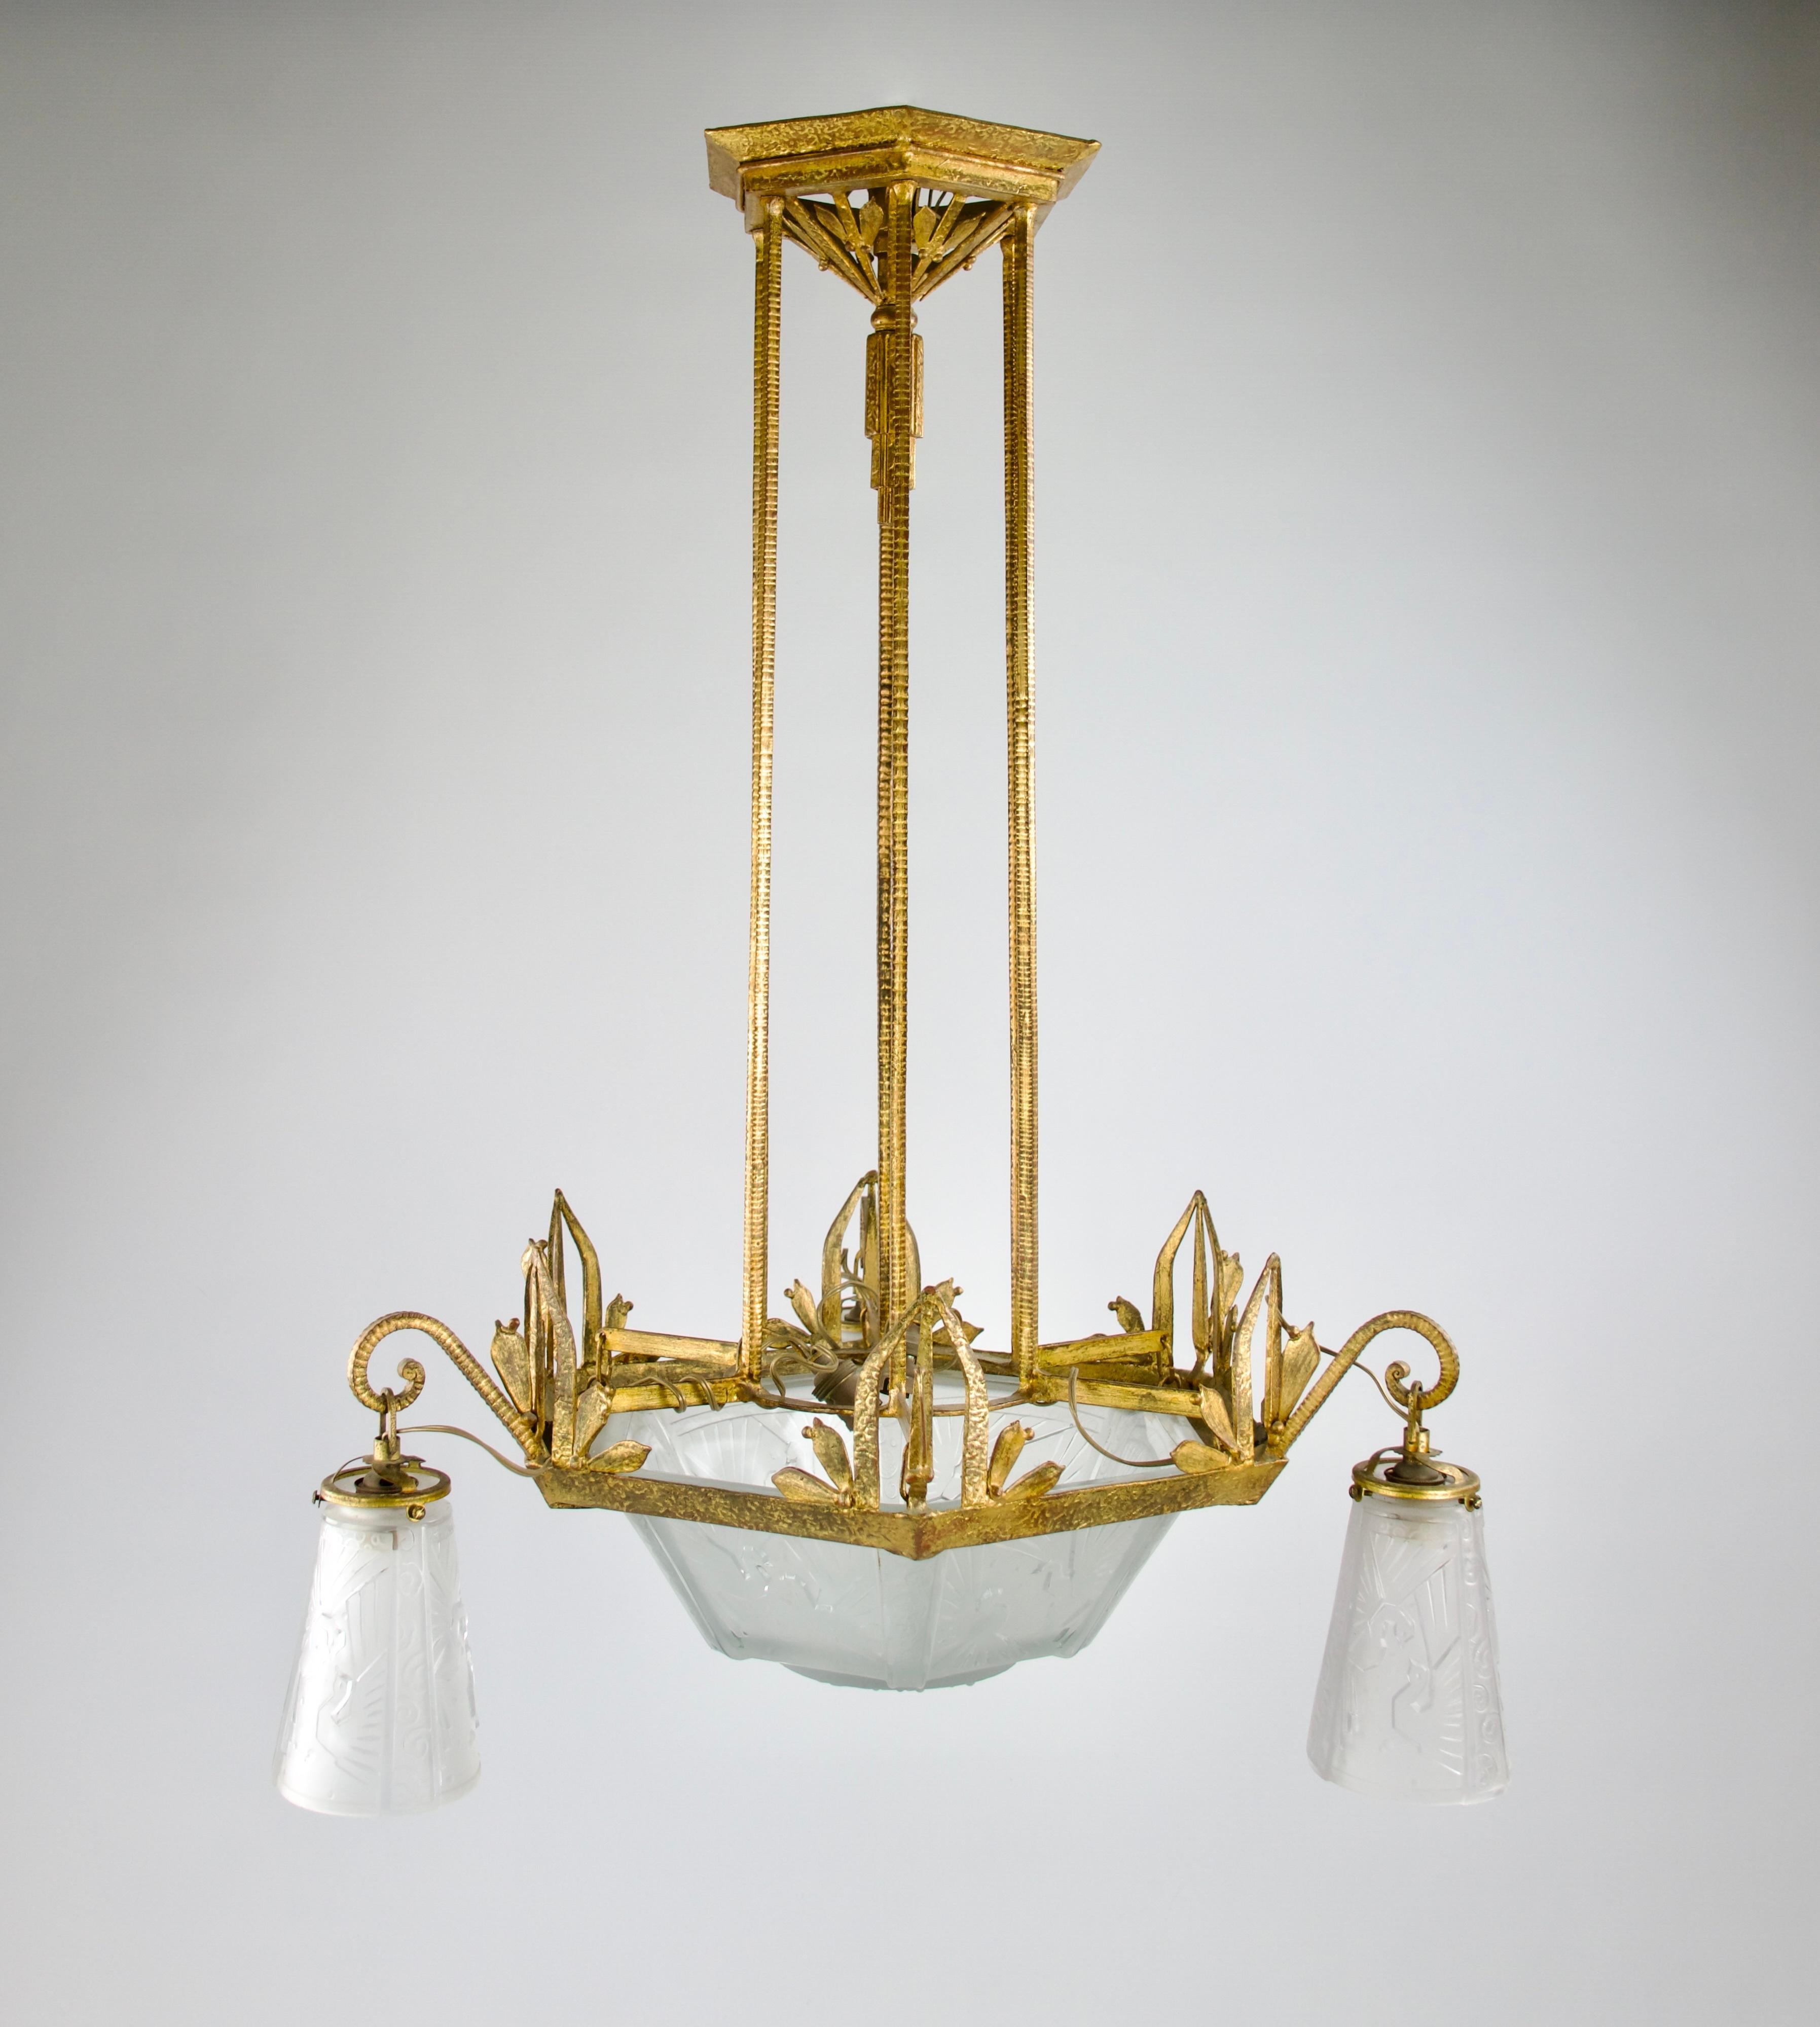 Magnifique lustre Muller Frères à cadre doré et à motif de paon, de la période Art déco française.

En bon état.

Dimensions en cm ( H x D ) : 82 x 56

Expédition sécurisée.